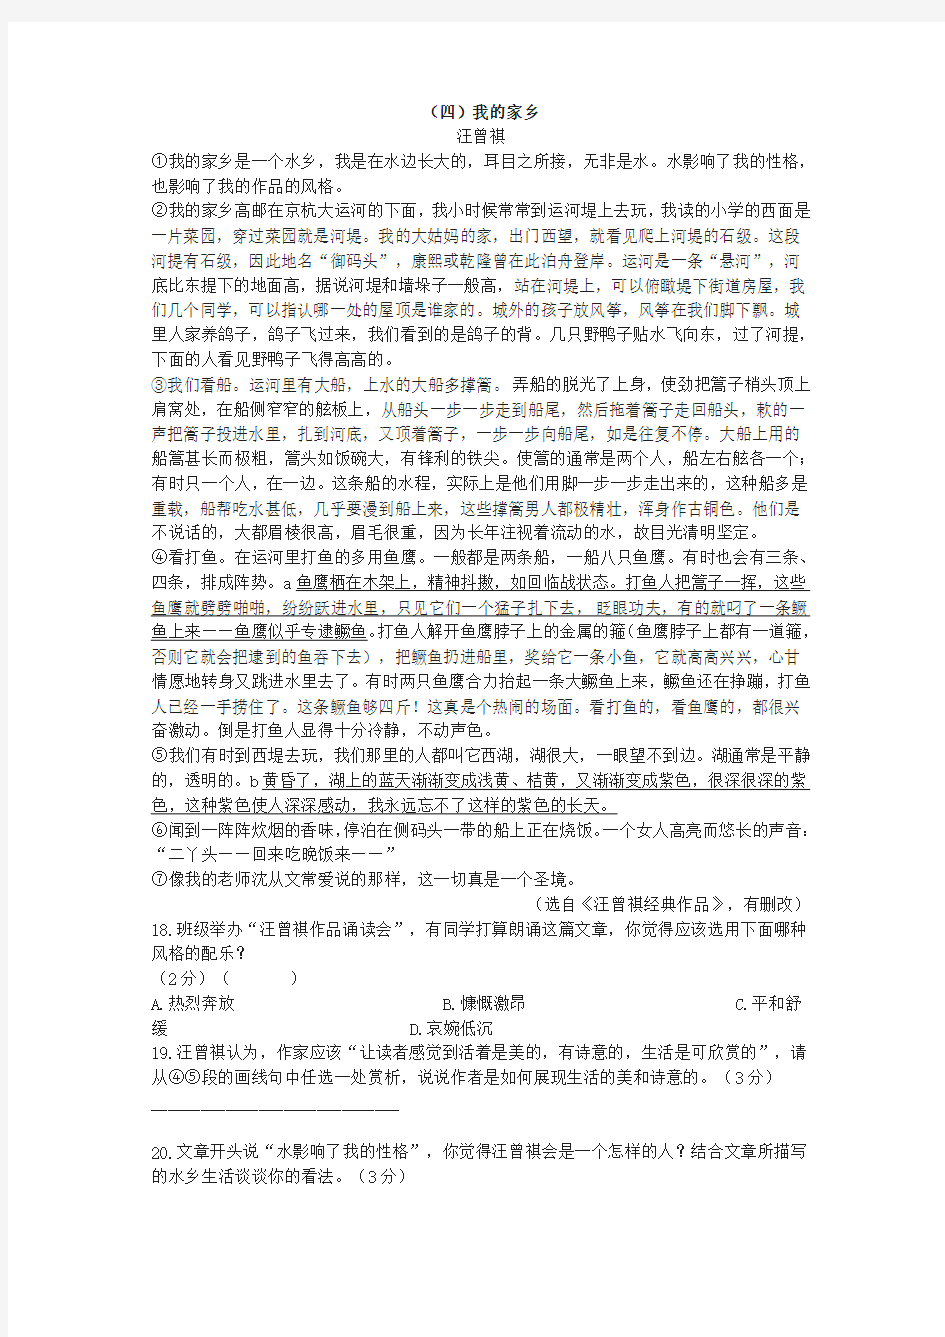 汪曾祺《我的家乡》阅读练习及答案(2020年广西北部湾经济区中考题)